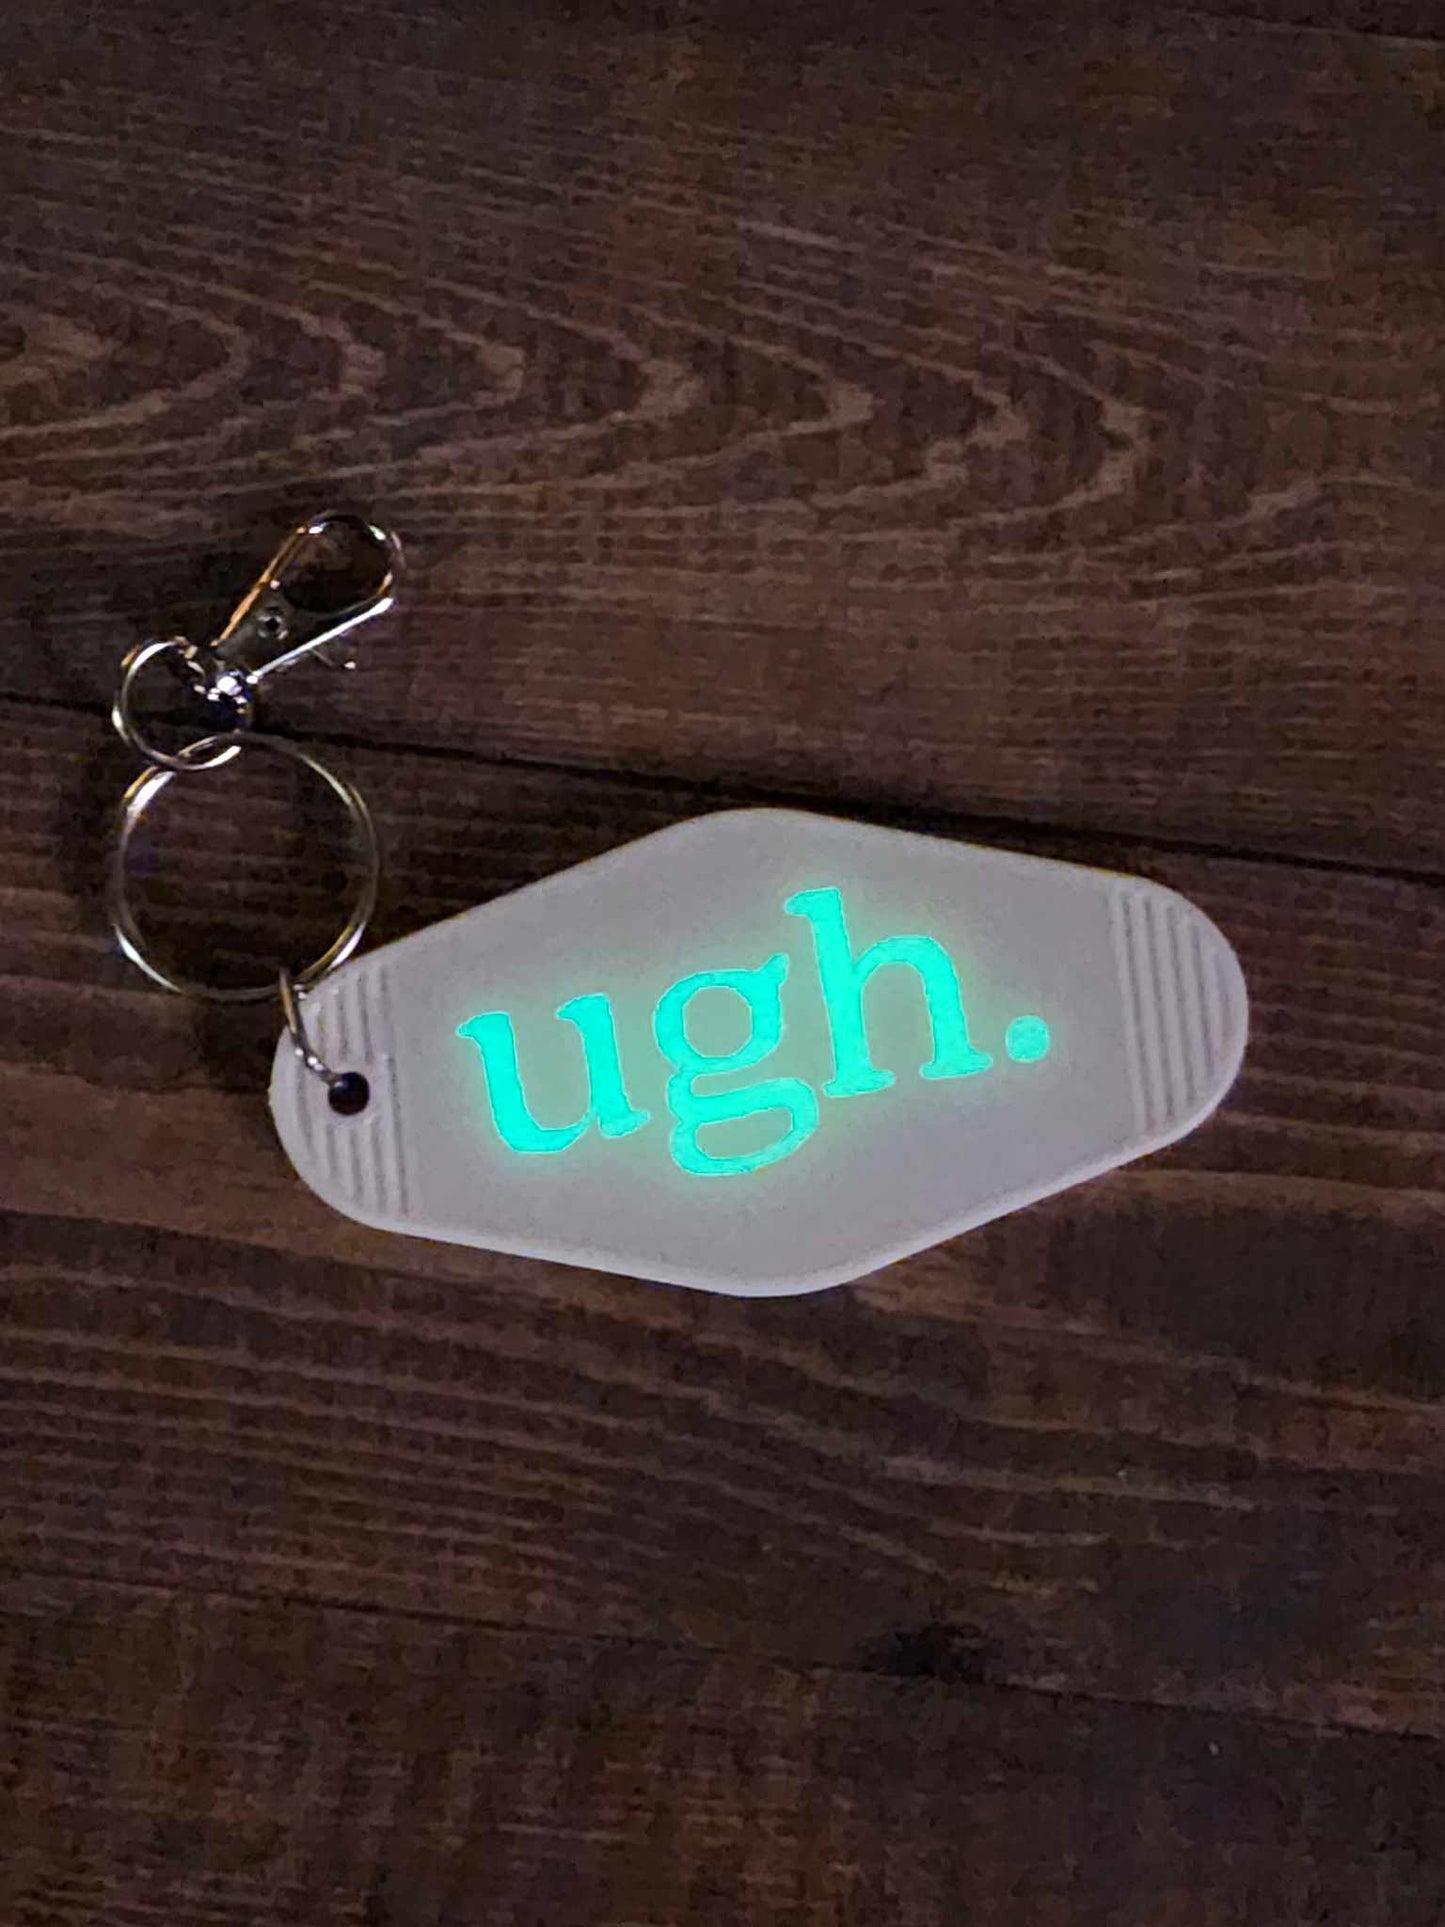 "Ugh." Retro Motel Keychain